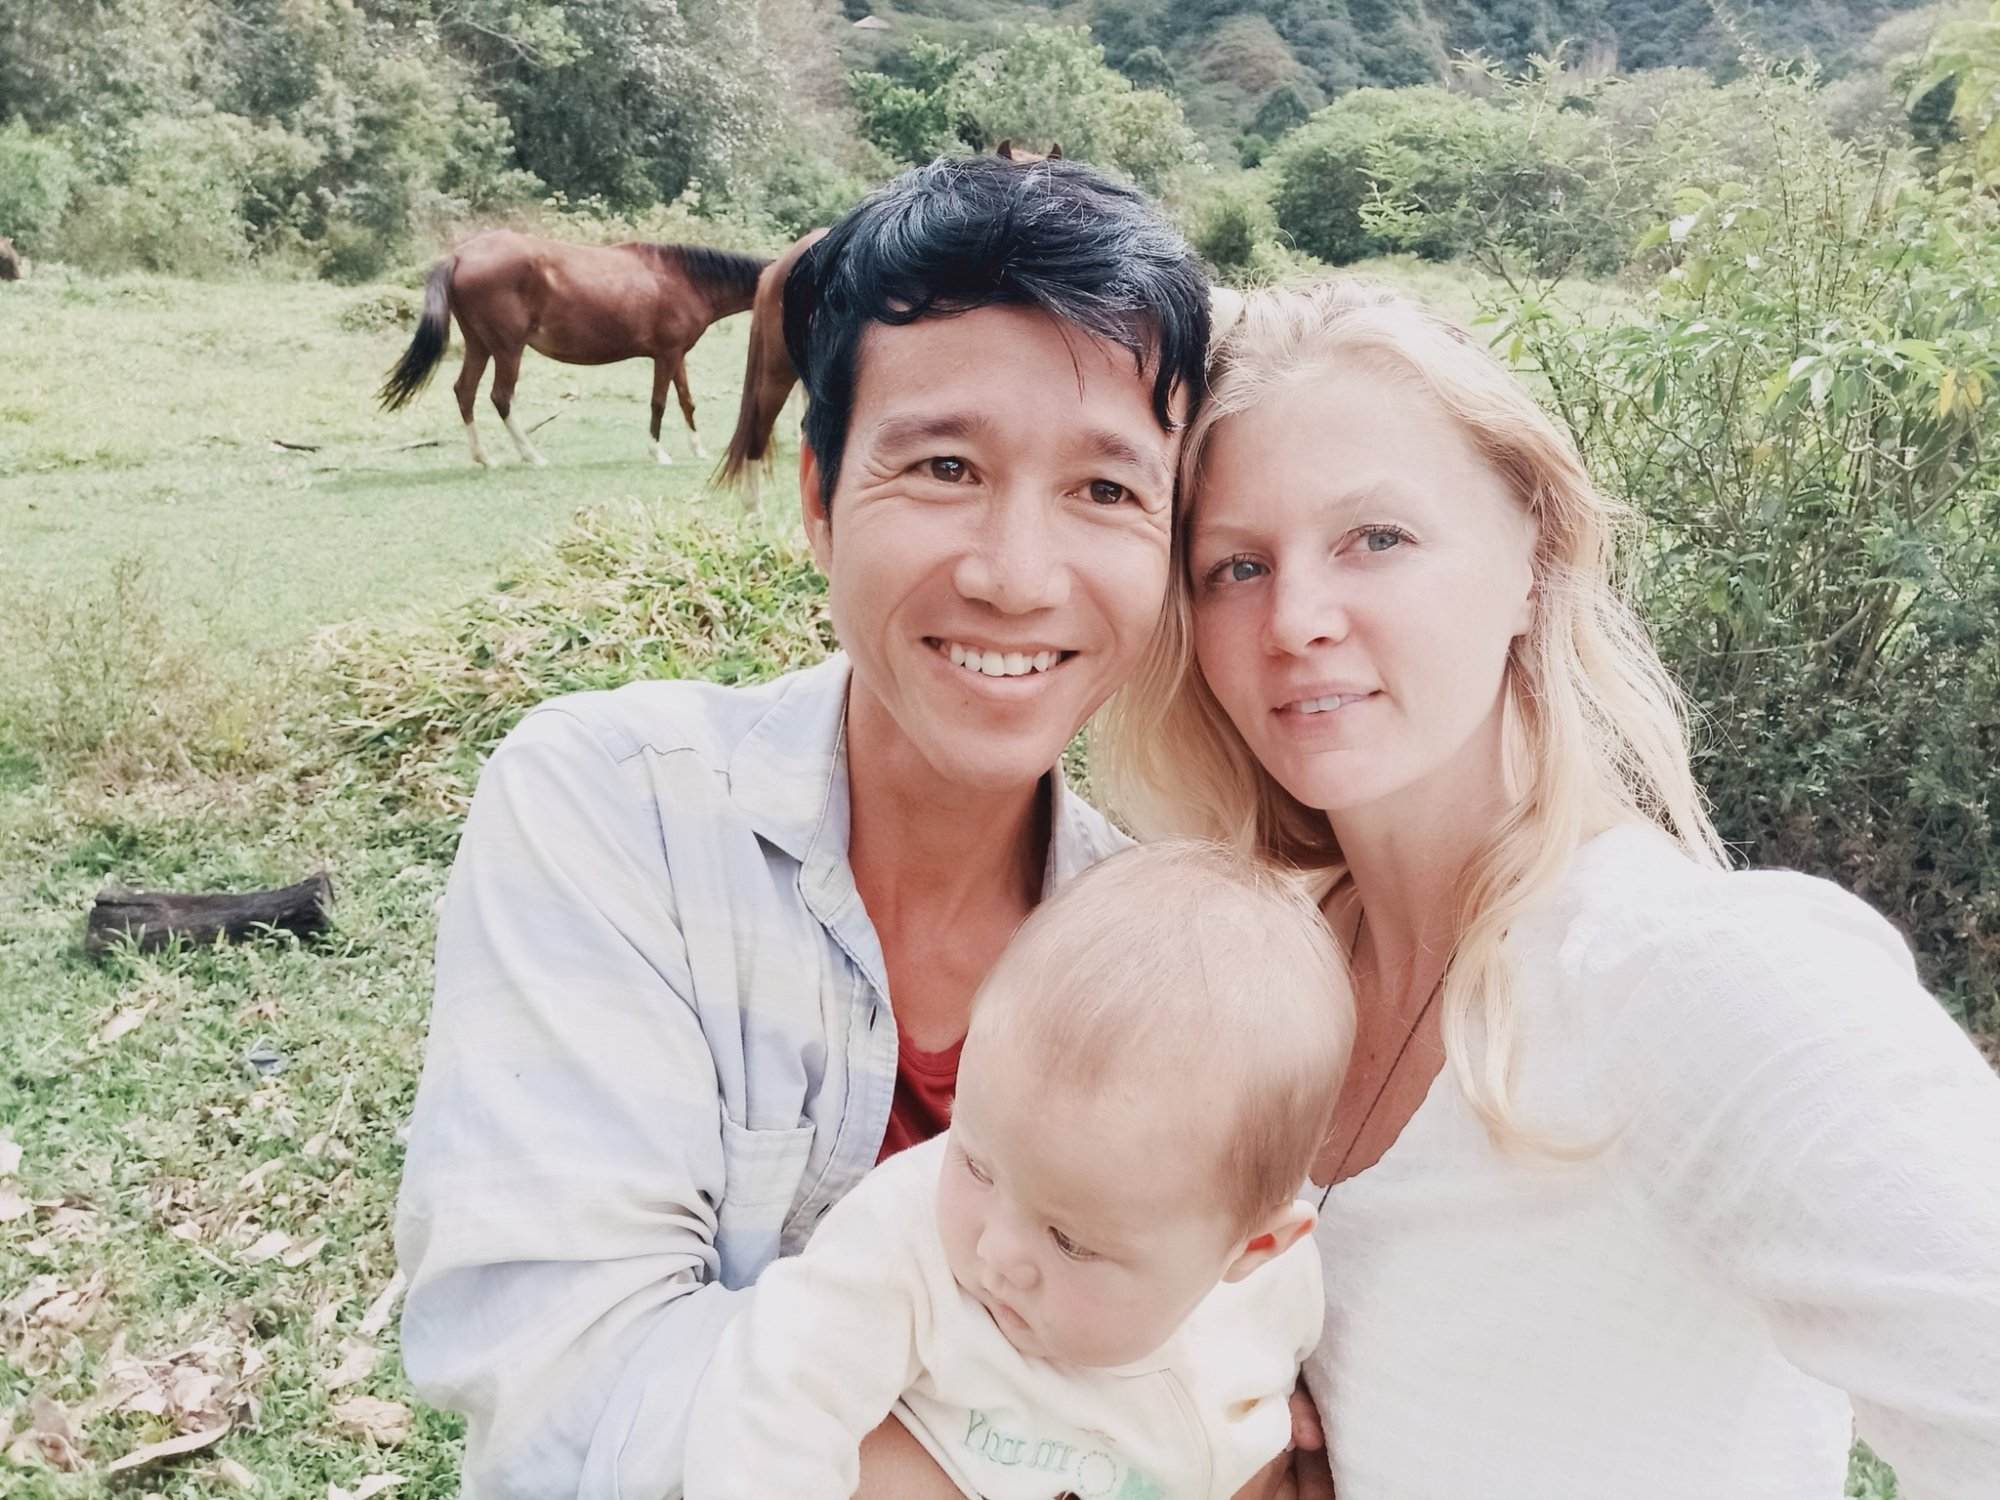 Chàng trai Việt 'cua' bạn gái Mỹ cùng bỏ phố về rừng Nam Mỹ sinh con - ảnh 4